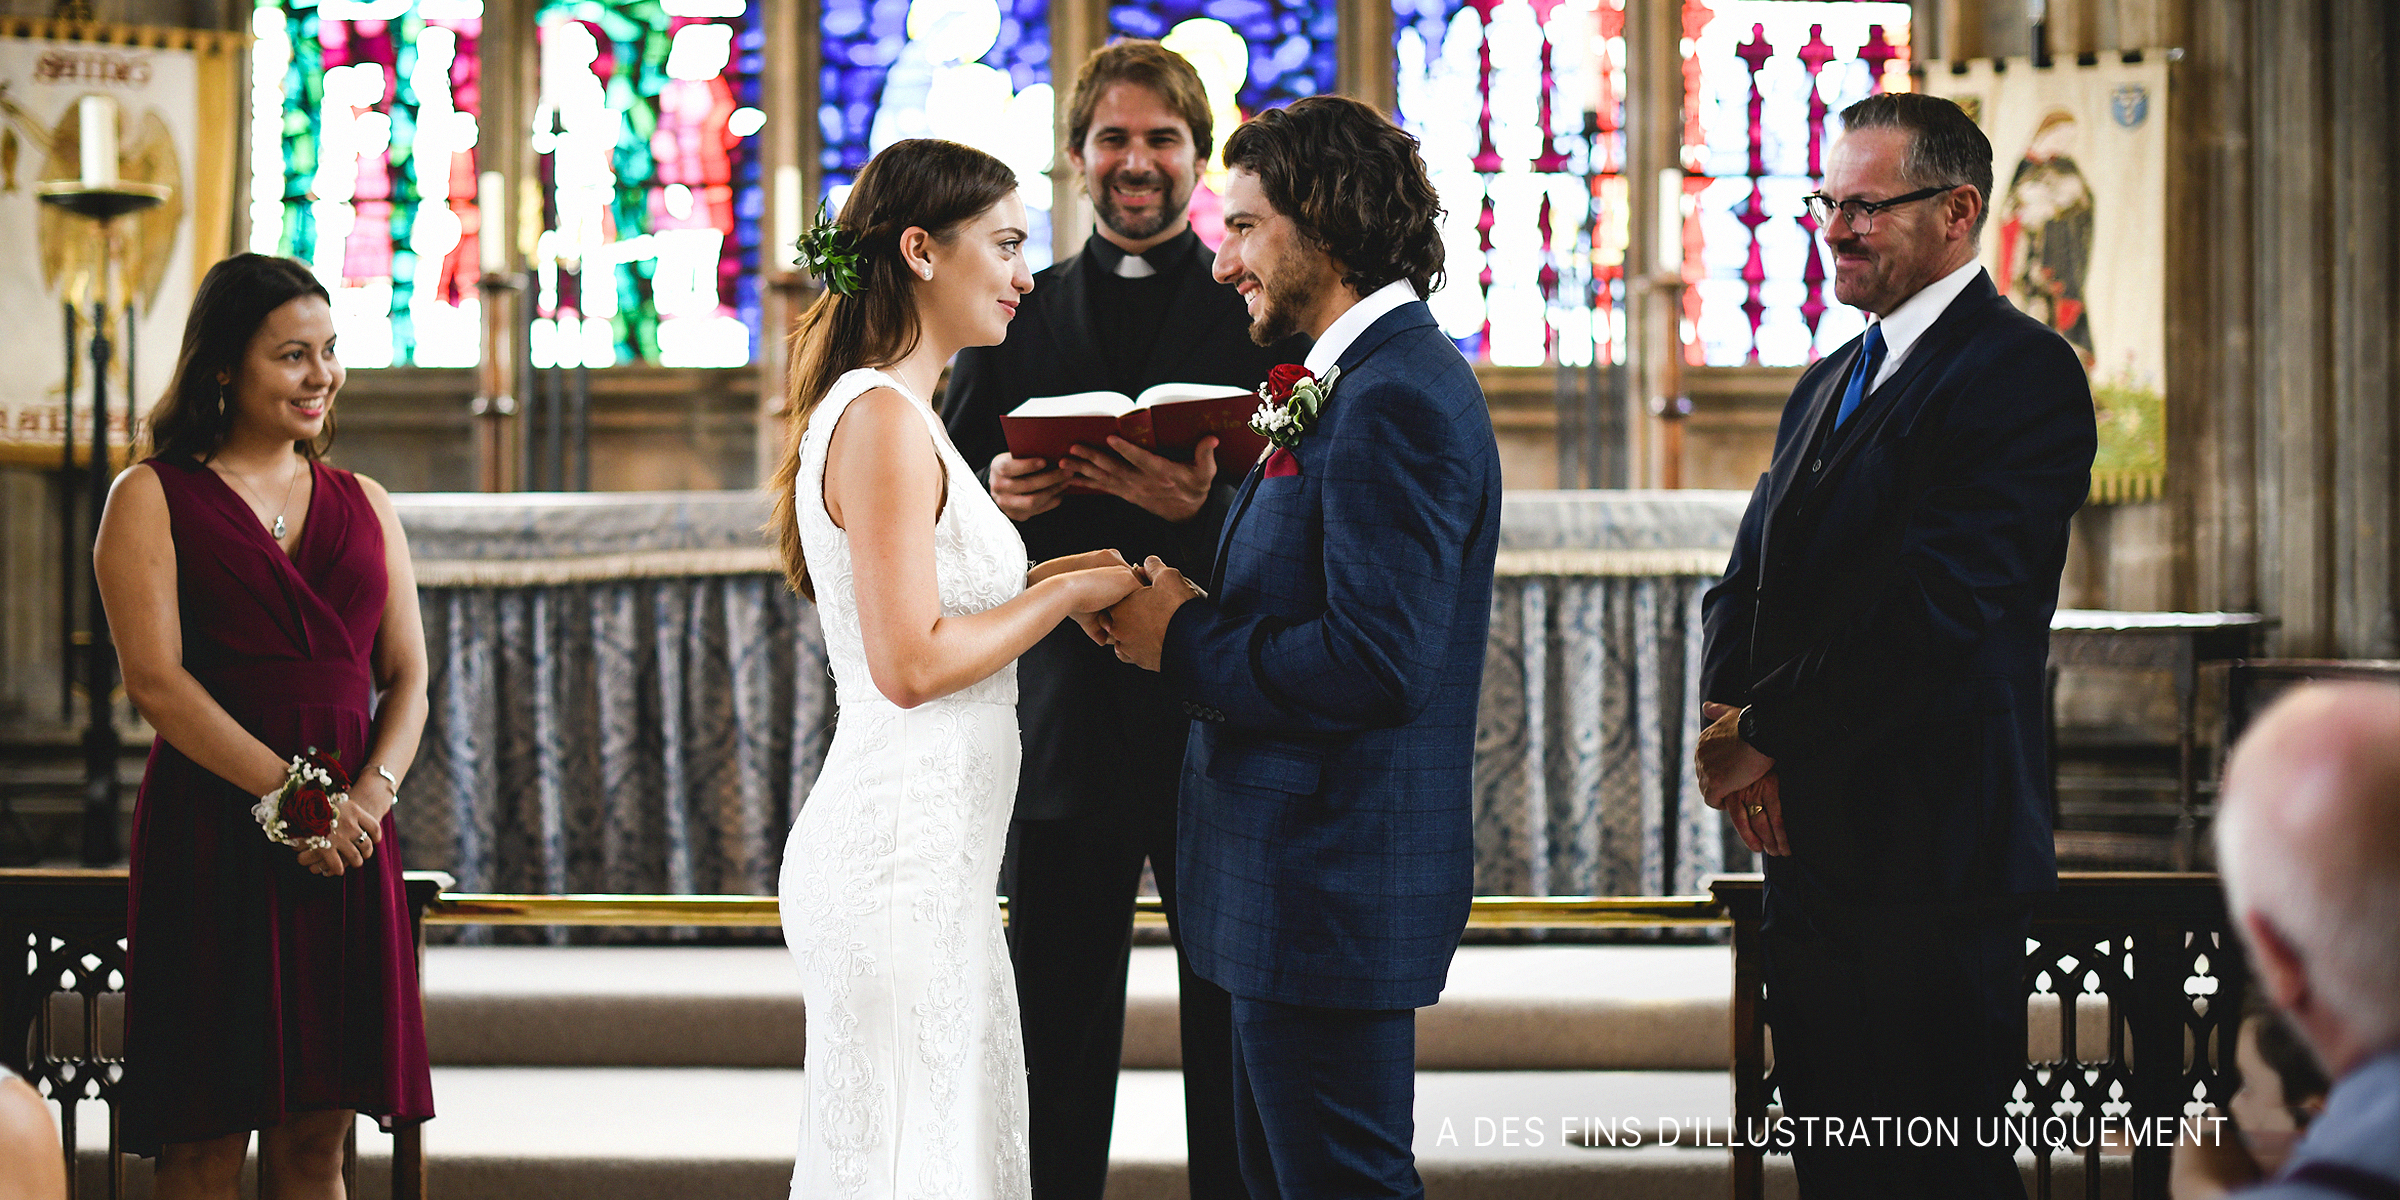 Un couple devant l'autel | Source : Shutterstock